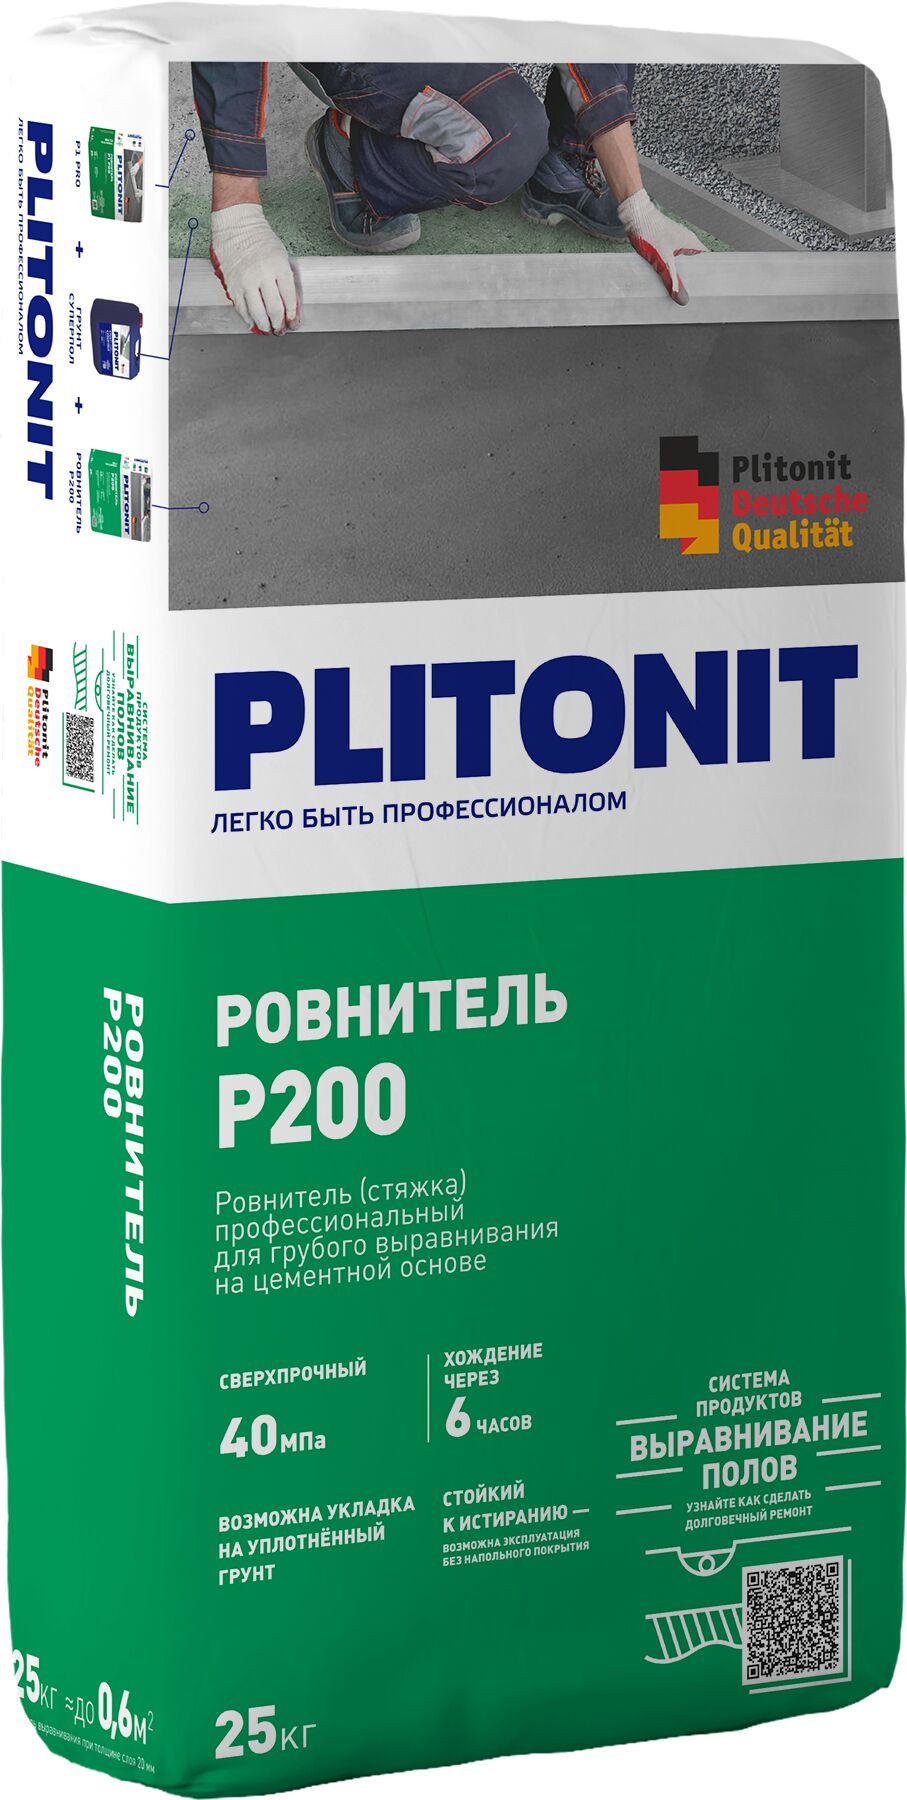 PLITONIT Р200 -25 ровнитель износостойкий, высокопрочный для грубого выравнивания , PLITONIT Р200 -25 ровнитель износостойкий, высокопрочный для грубого выравнивания 